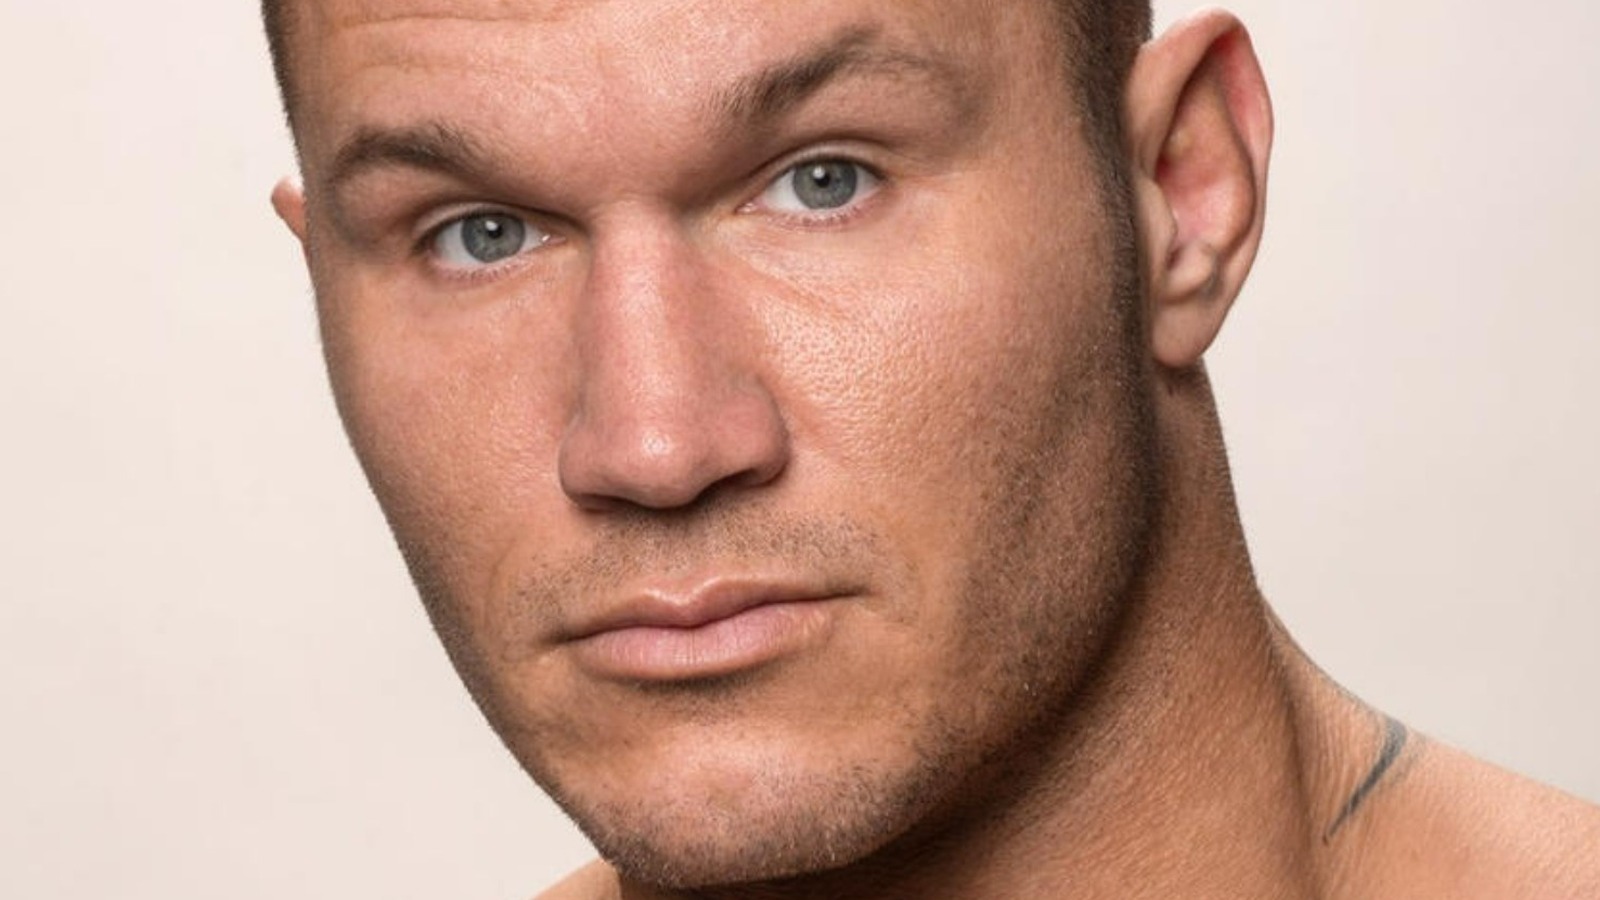 WWE-Star Randy Orton wurde von Ärzten angewiesen, nie wieder zu ringen